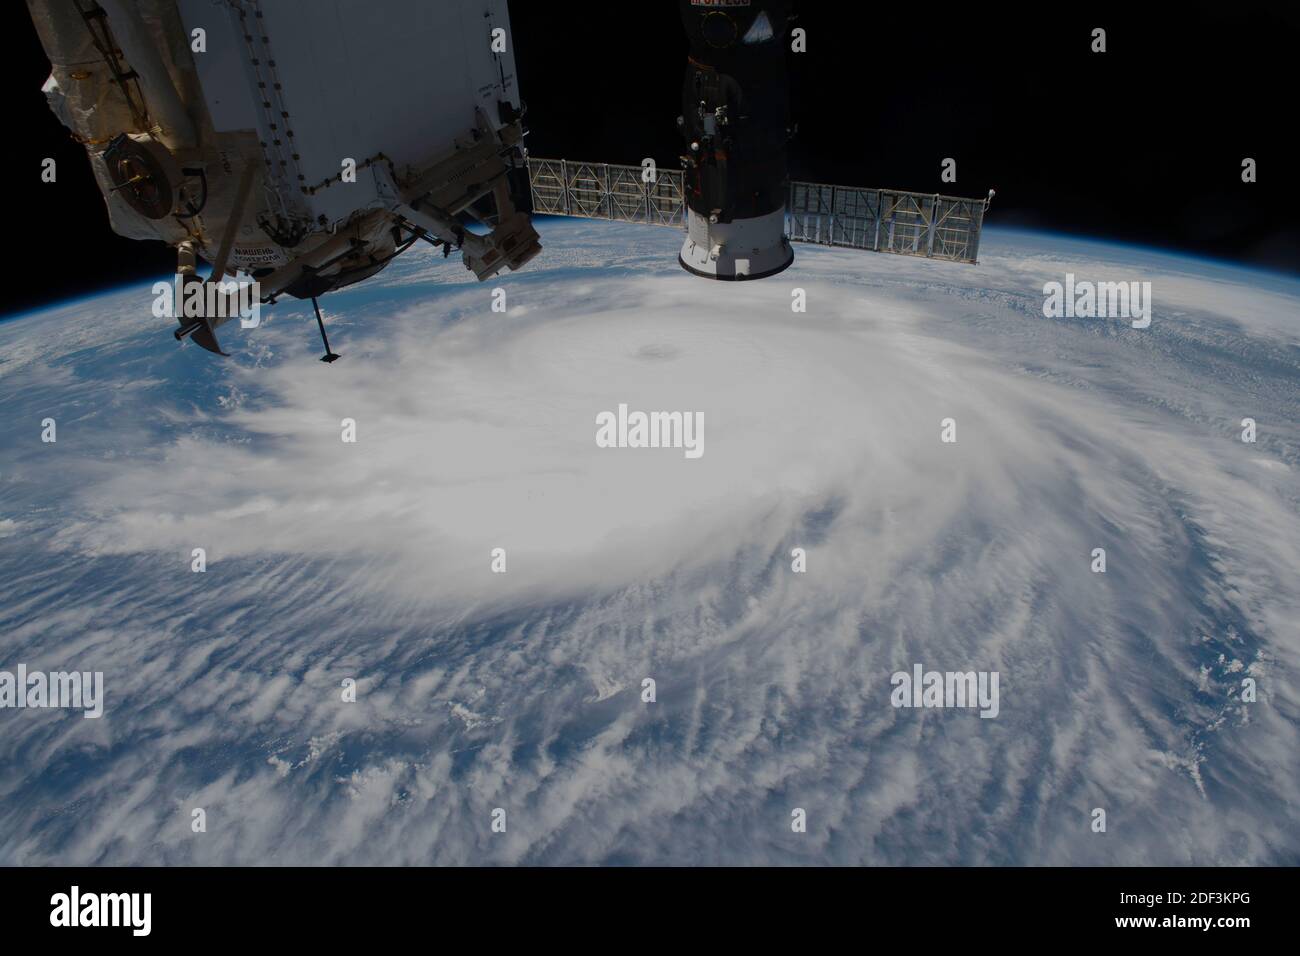 TEXAS, USA - 26. August 2020 - Hurrikan Laura wird am Mittwochnachmittag vor der Küste der Texas-Louisiana-Grenze als International Space S dargestellt Stockfoto